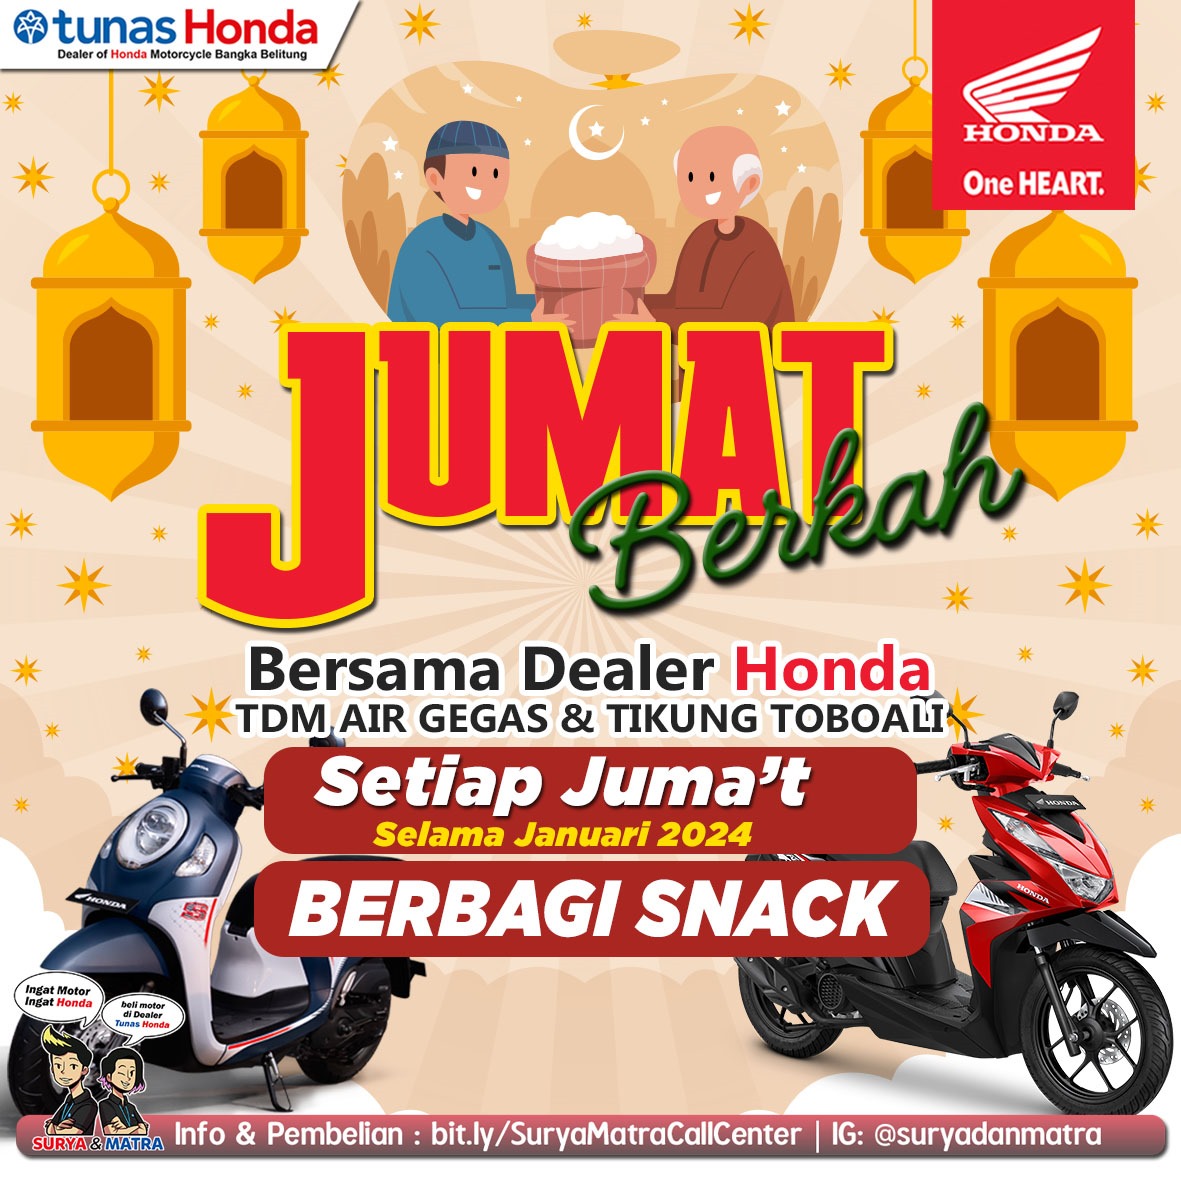 Honda TDM Air Gegas dan Toboali, Bagikan Paket Snack Gratis Setiap Jum'at - babelpos.disway.id - Babel Pos